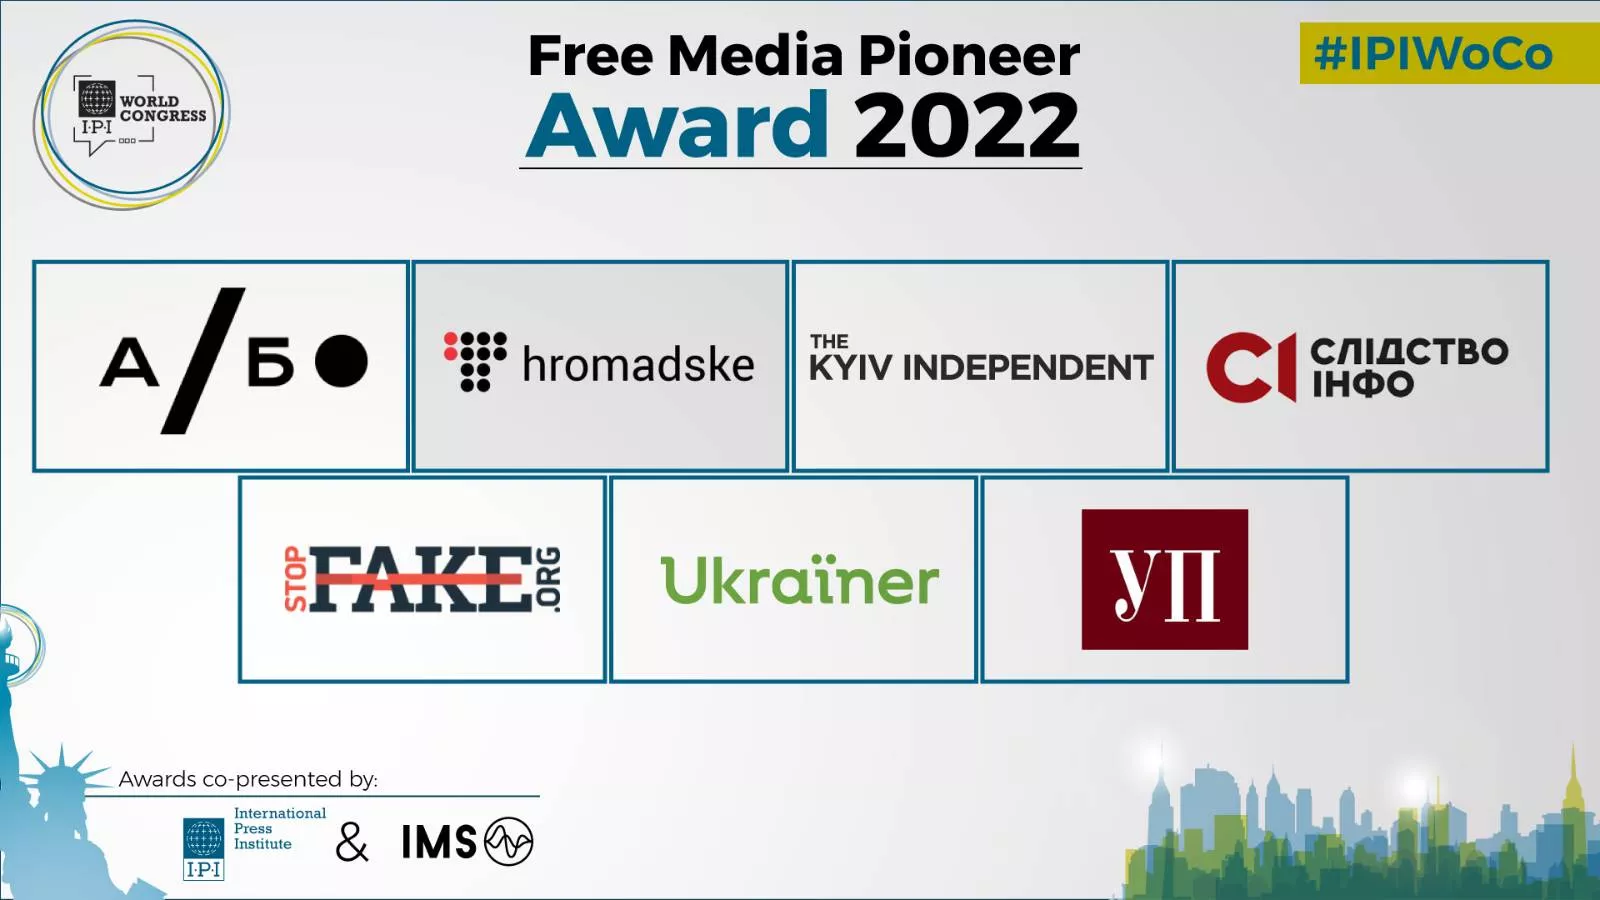 Сім українських медіа відзначено премією Free Media Pioneer 2022